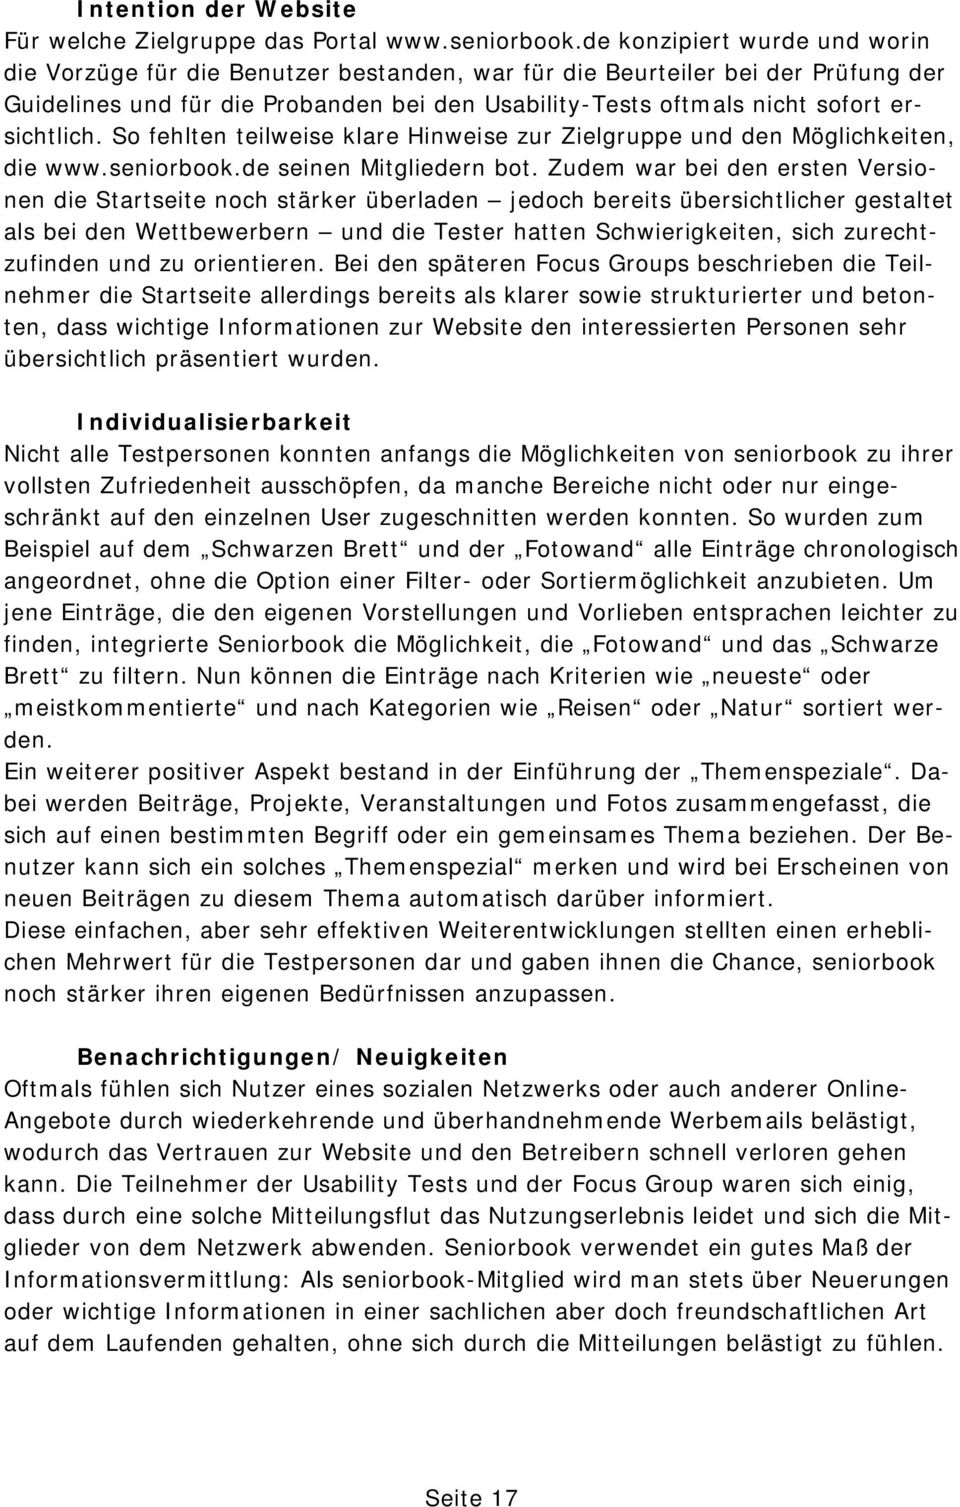 ersichtlich. So fehlten teilweise klare Hinweise zur Zielgruppe und den Möglichkeiten, die www.seniorbook.de seinen Mitgliedern bot.